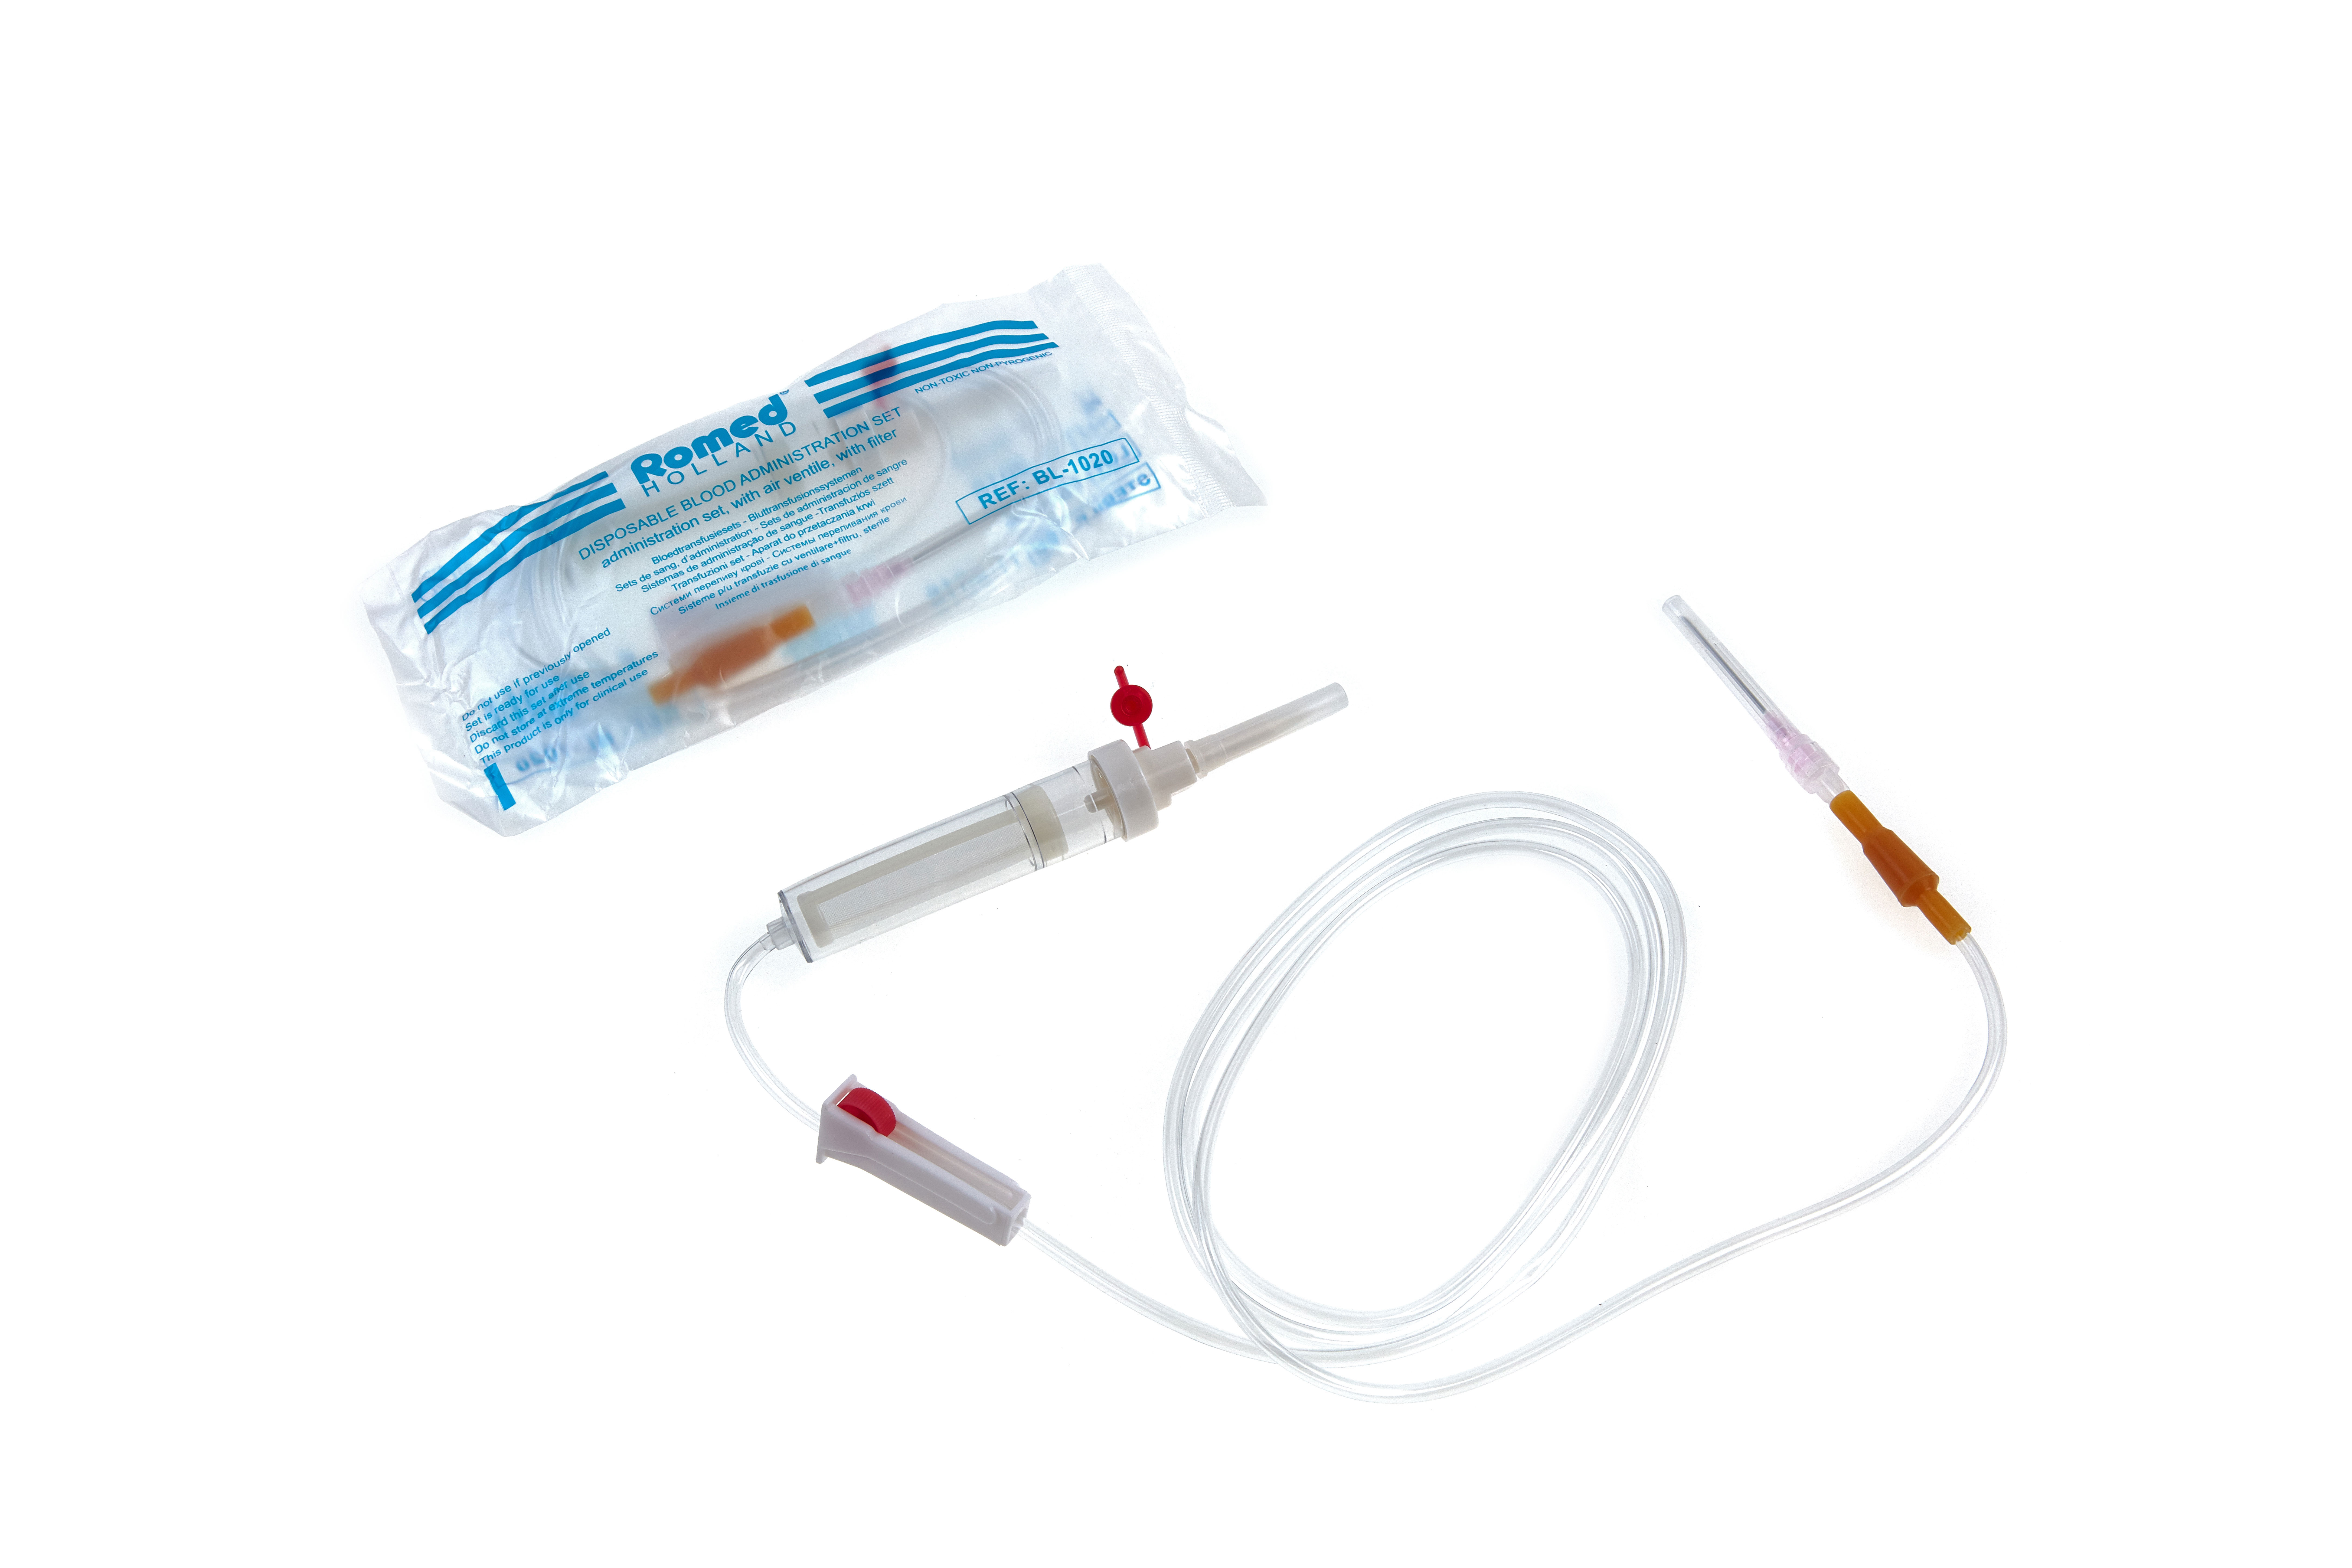 BL-1020 Kits de transfusion sanguine Romed, avec aiguille à prise d'air + filtre, stériles, conditionnés individuellement dans un sac plastique, 250 unités par carton.